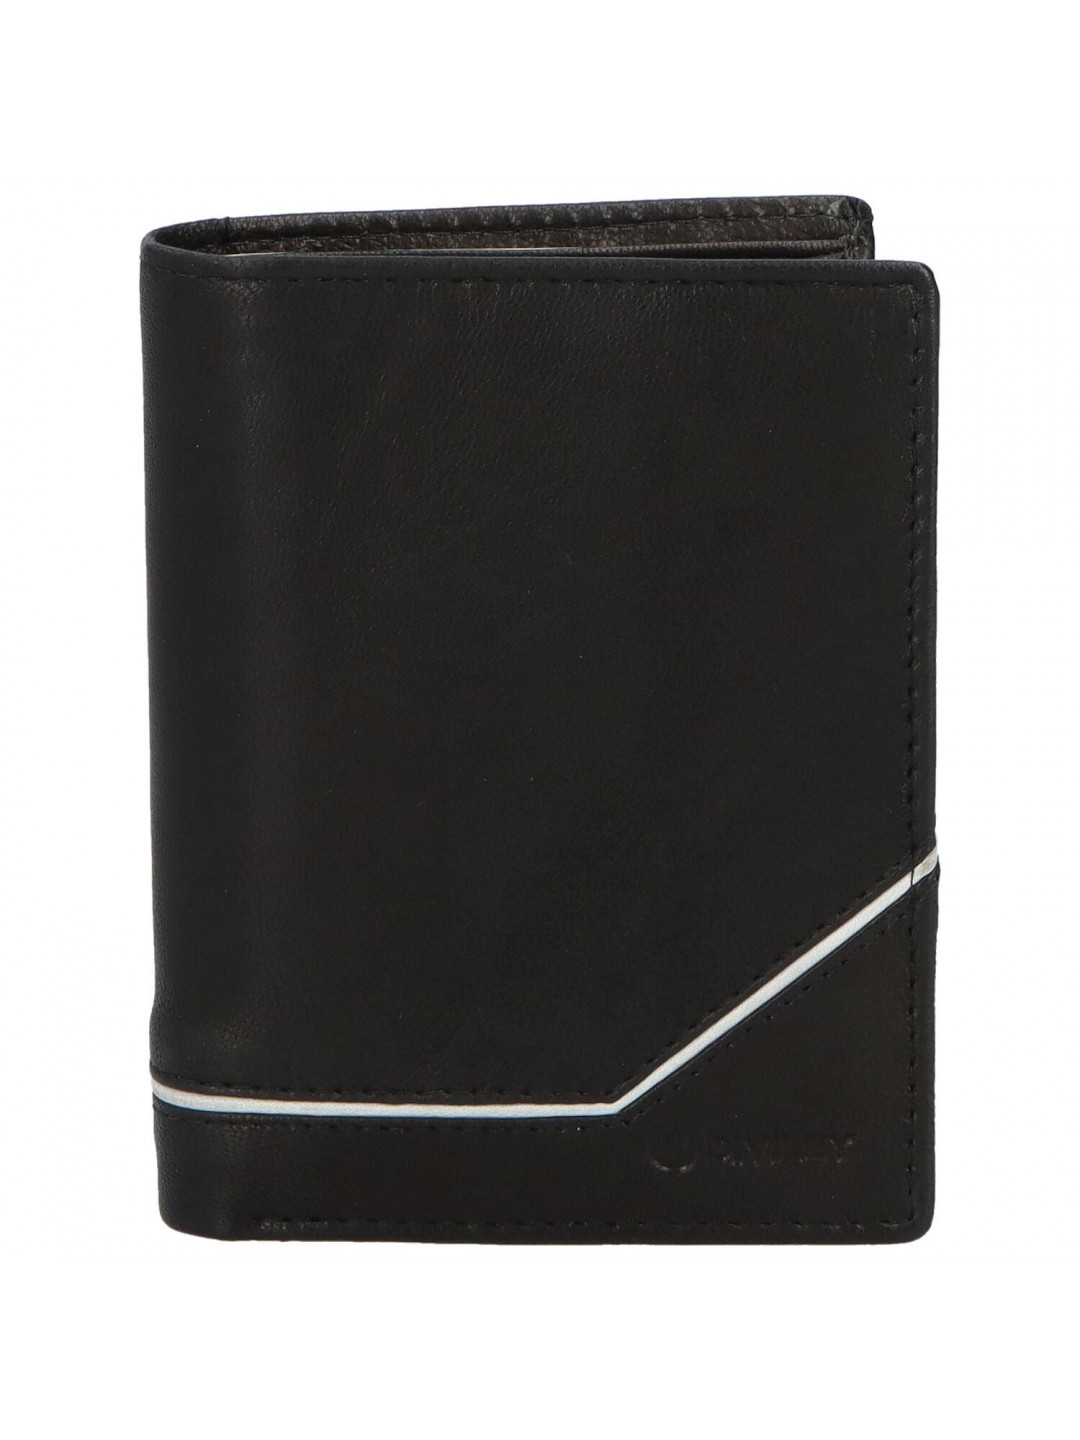 Trendová pánská kožená peněženka Gvuk černá – bílá